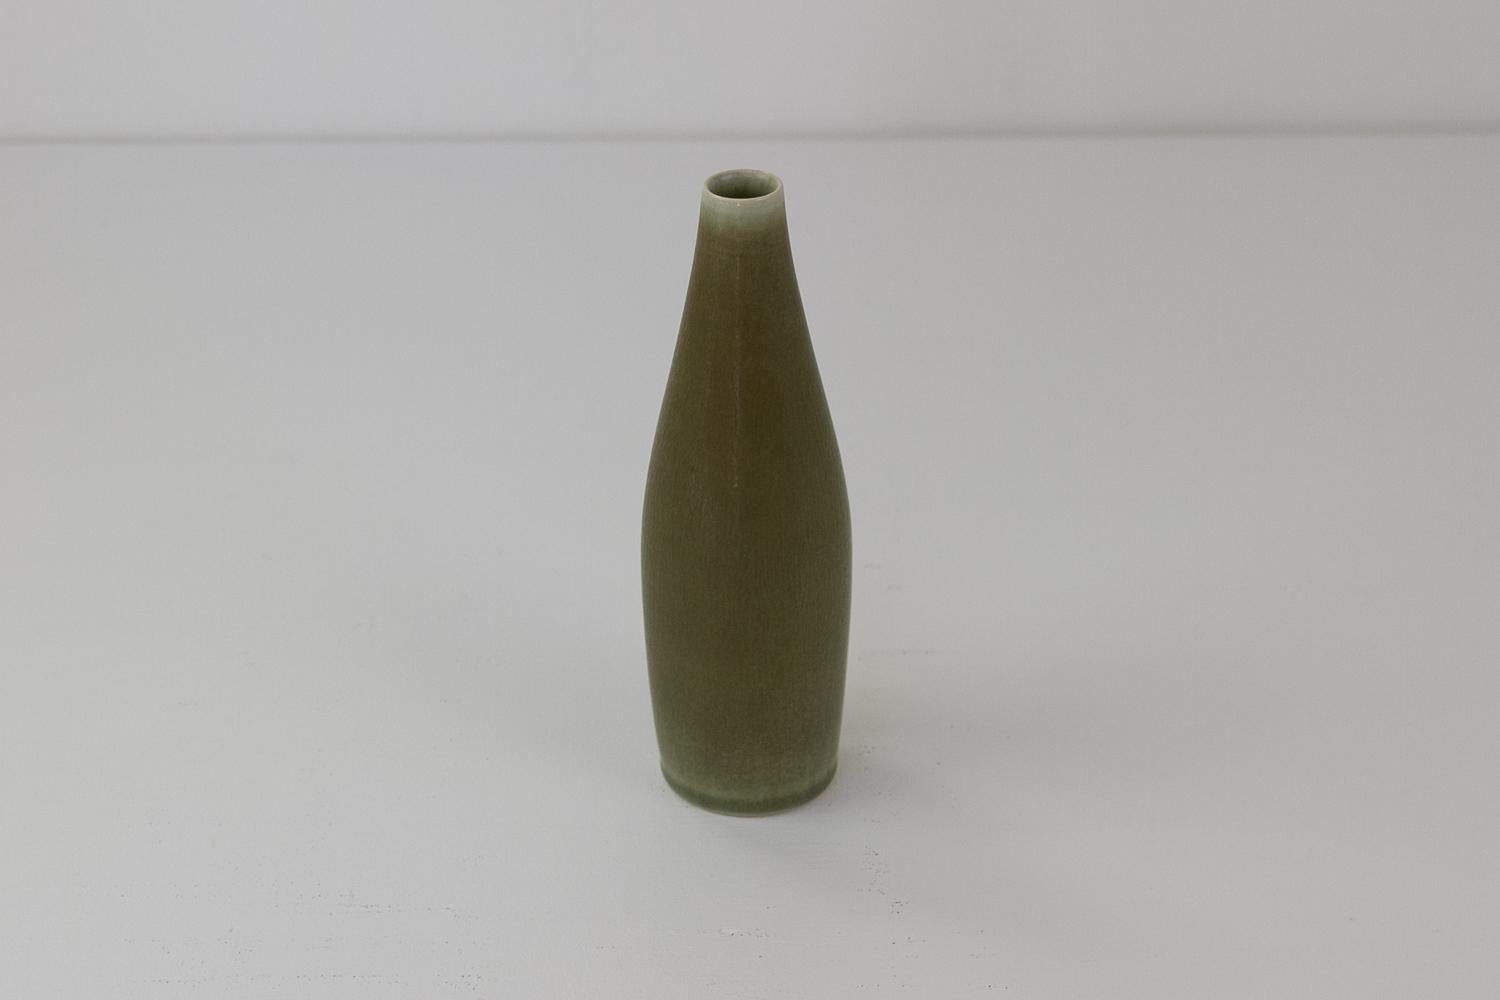 Vase moderne danois de Per Linnemann-Schmidt pour Palshus, années 1960
Vase en céramique de forme torpédo avec glaçure en fourrure de lièvre en vert/sage par Palshus, Danemark.
Palshus a été créé par Annelise et Per Linnemann-Schmidt en 1948 et a